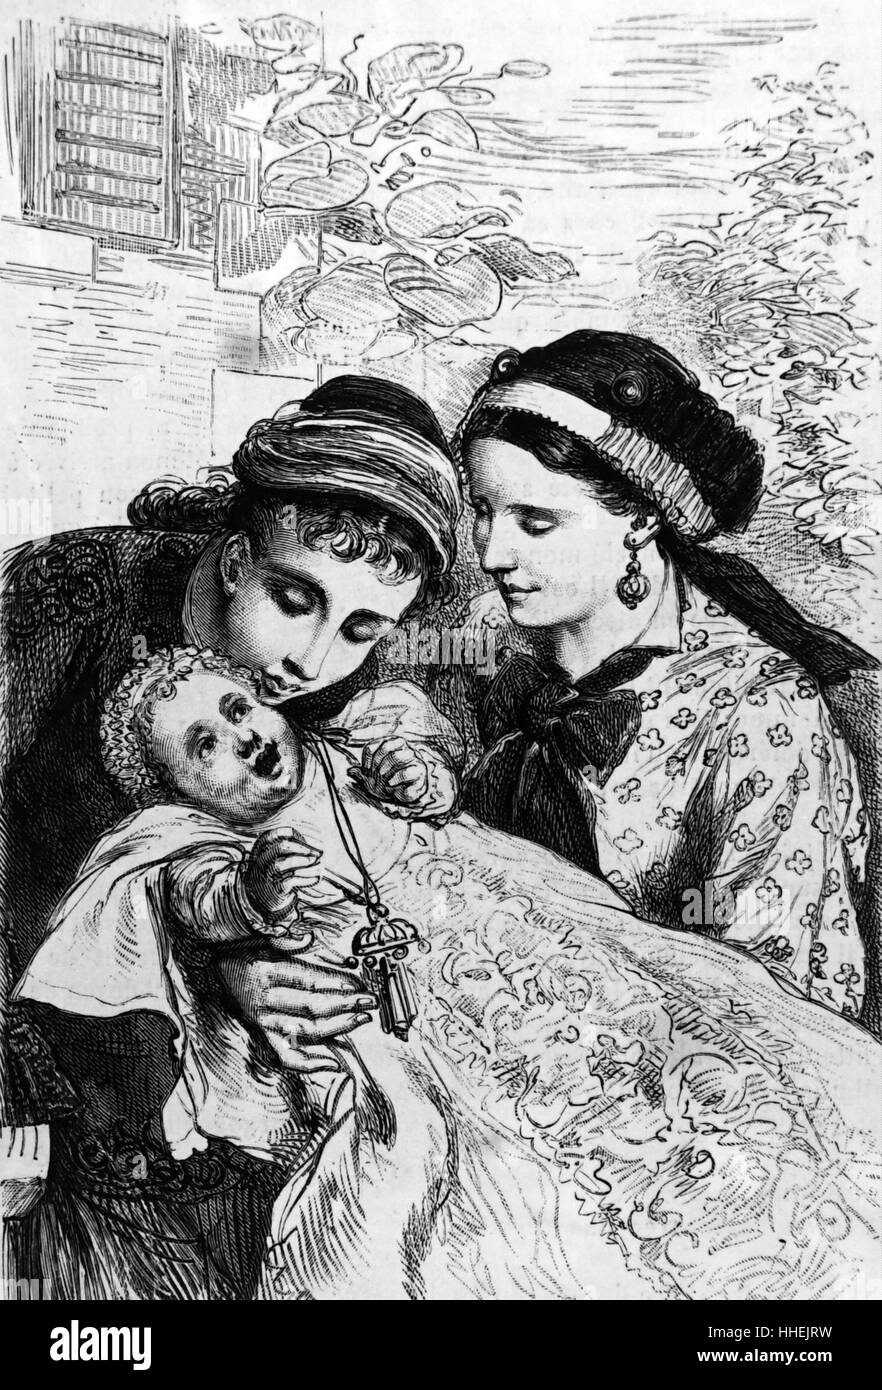 Abbildung zeigt zwei Schwestern verehren ihren Säugling Geschwister, wer gesehen wird, hält eine Rassel. Vom 19. Jahrhundert Stockfoto